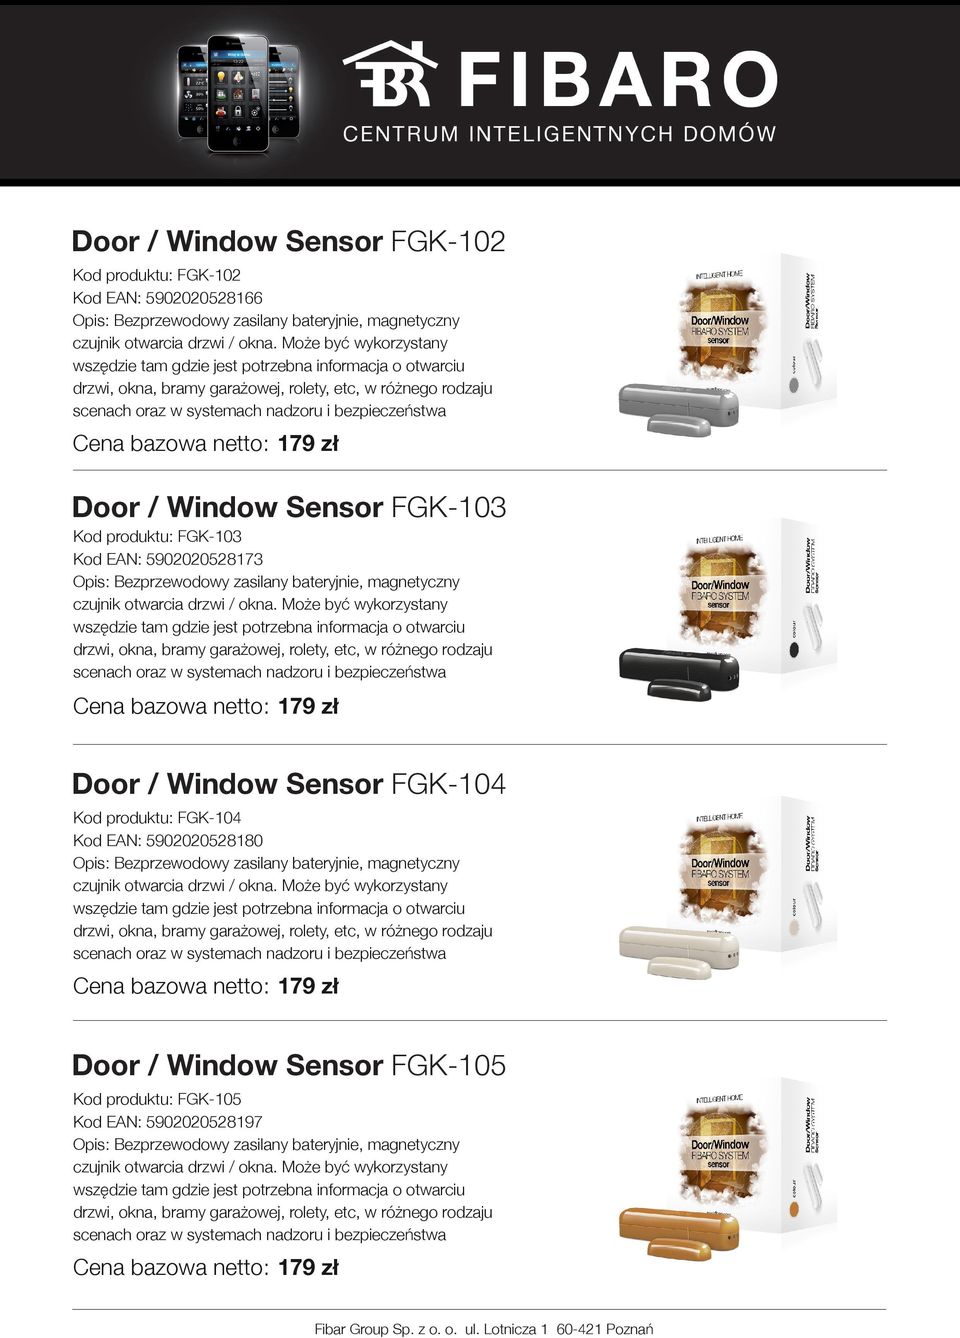 Door / Window Sensor FGK-104 Kod produktu: FGK-104 Kod EAN: 5902020528180